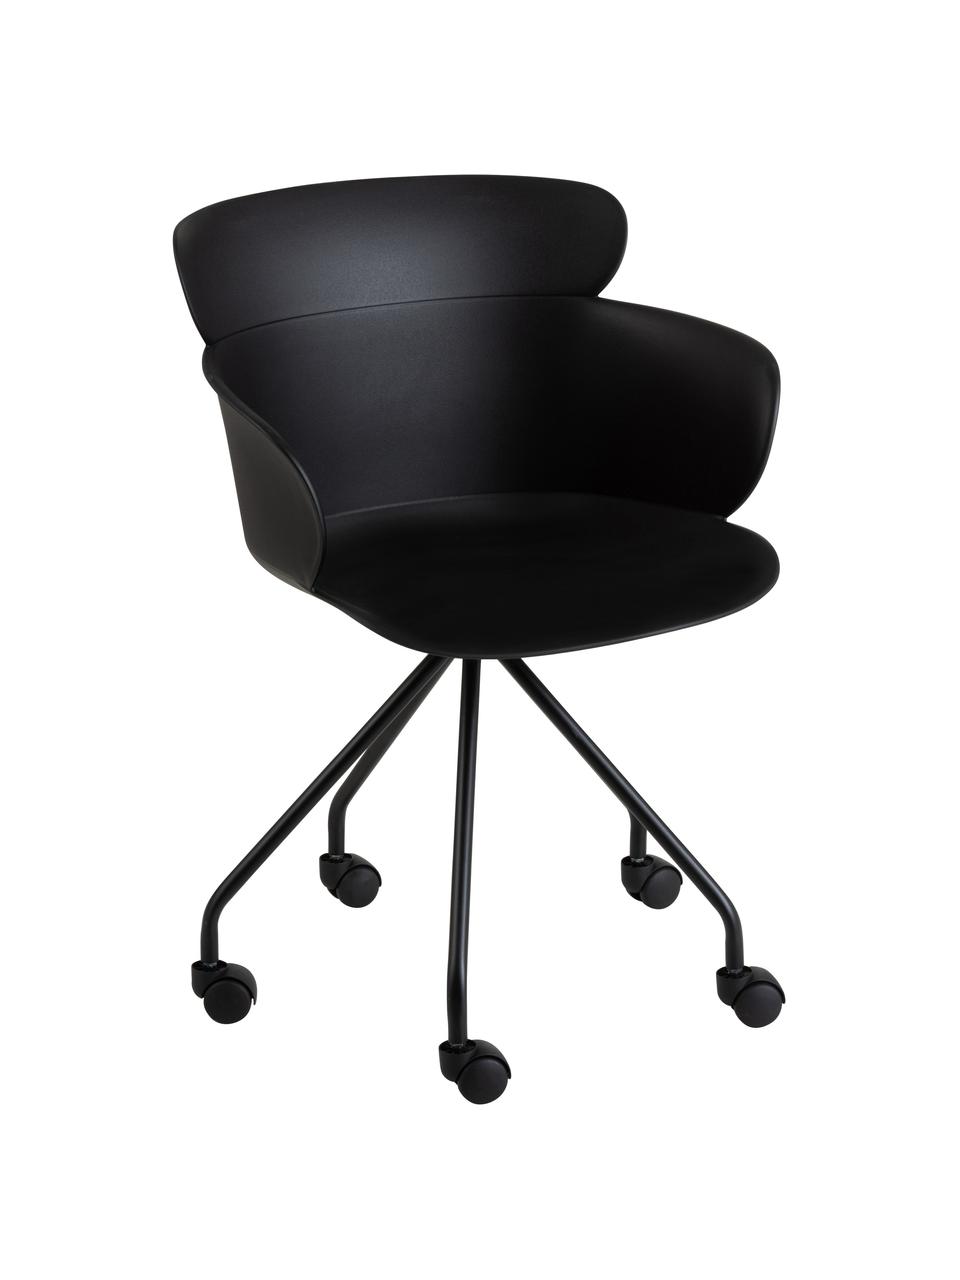 Krzesło biurowe z tworzywa sztucznego Eva, Tworzywo sztuczne (PP), Czarny, S 61 x G 58 cm